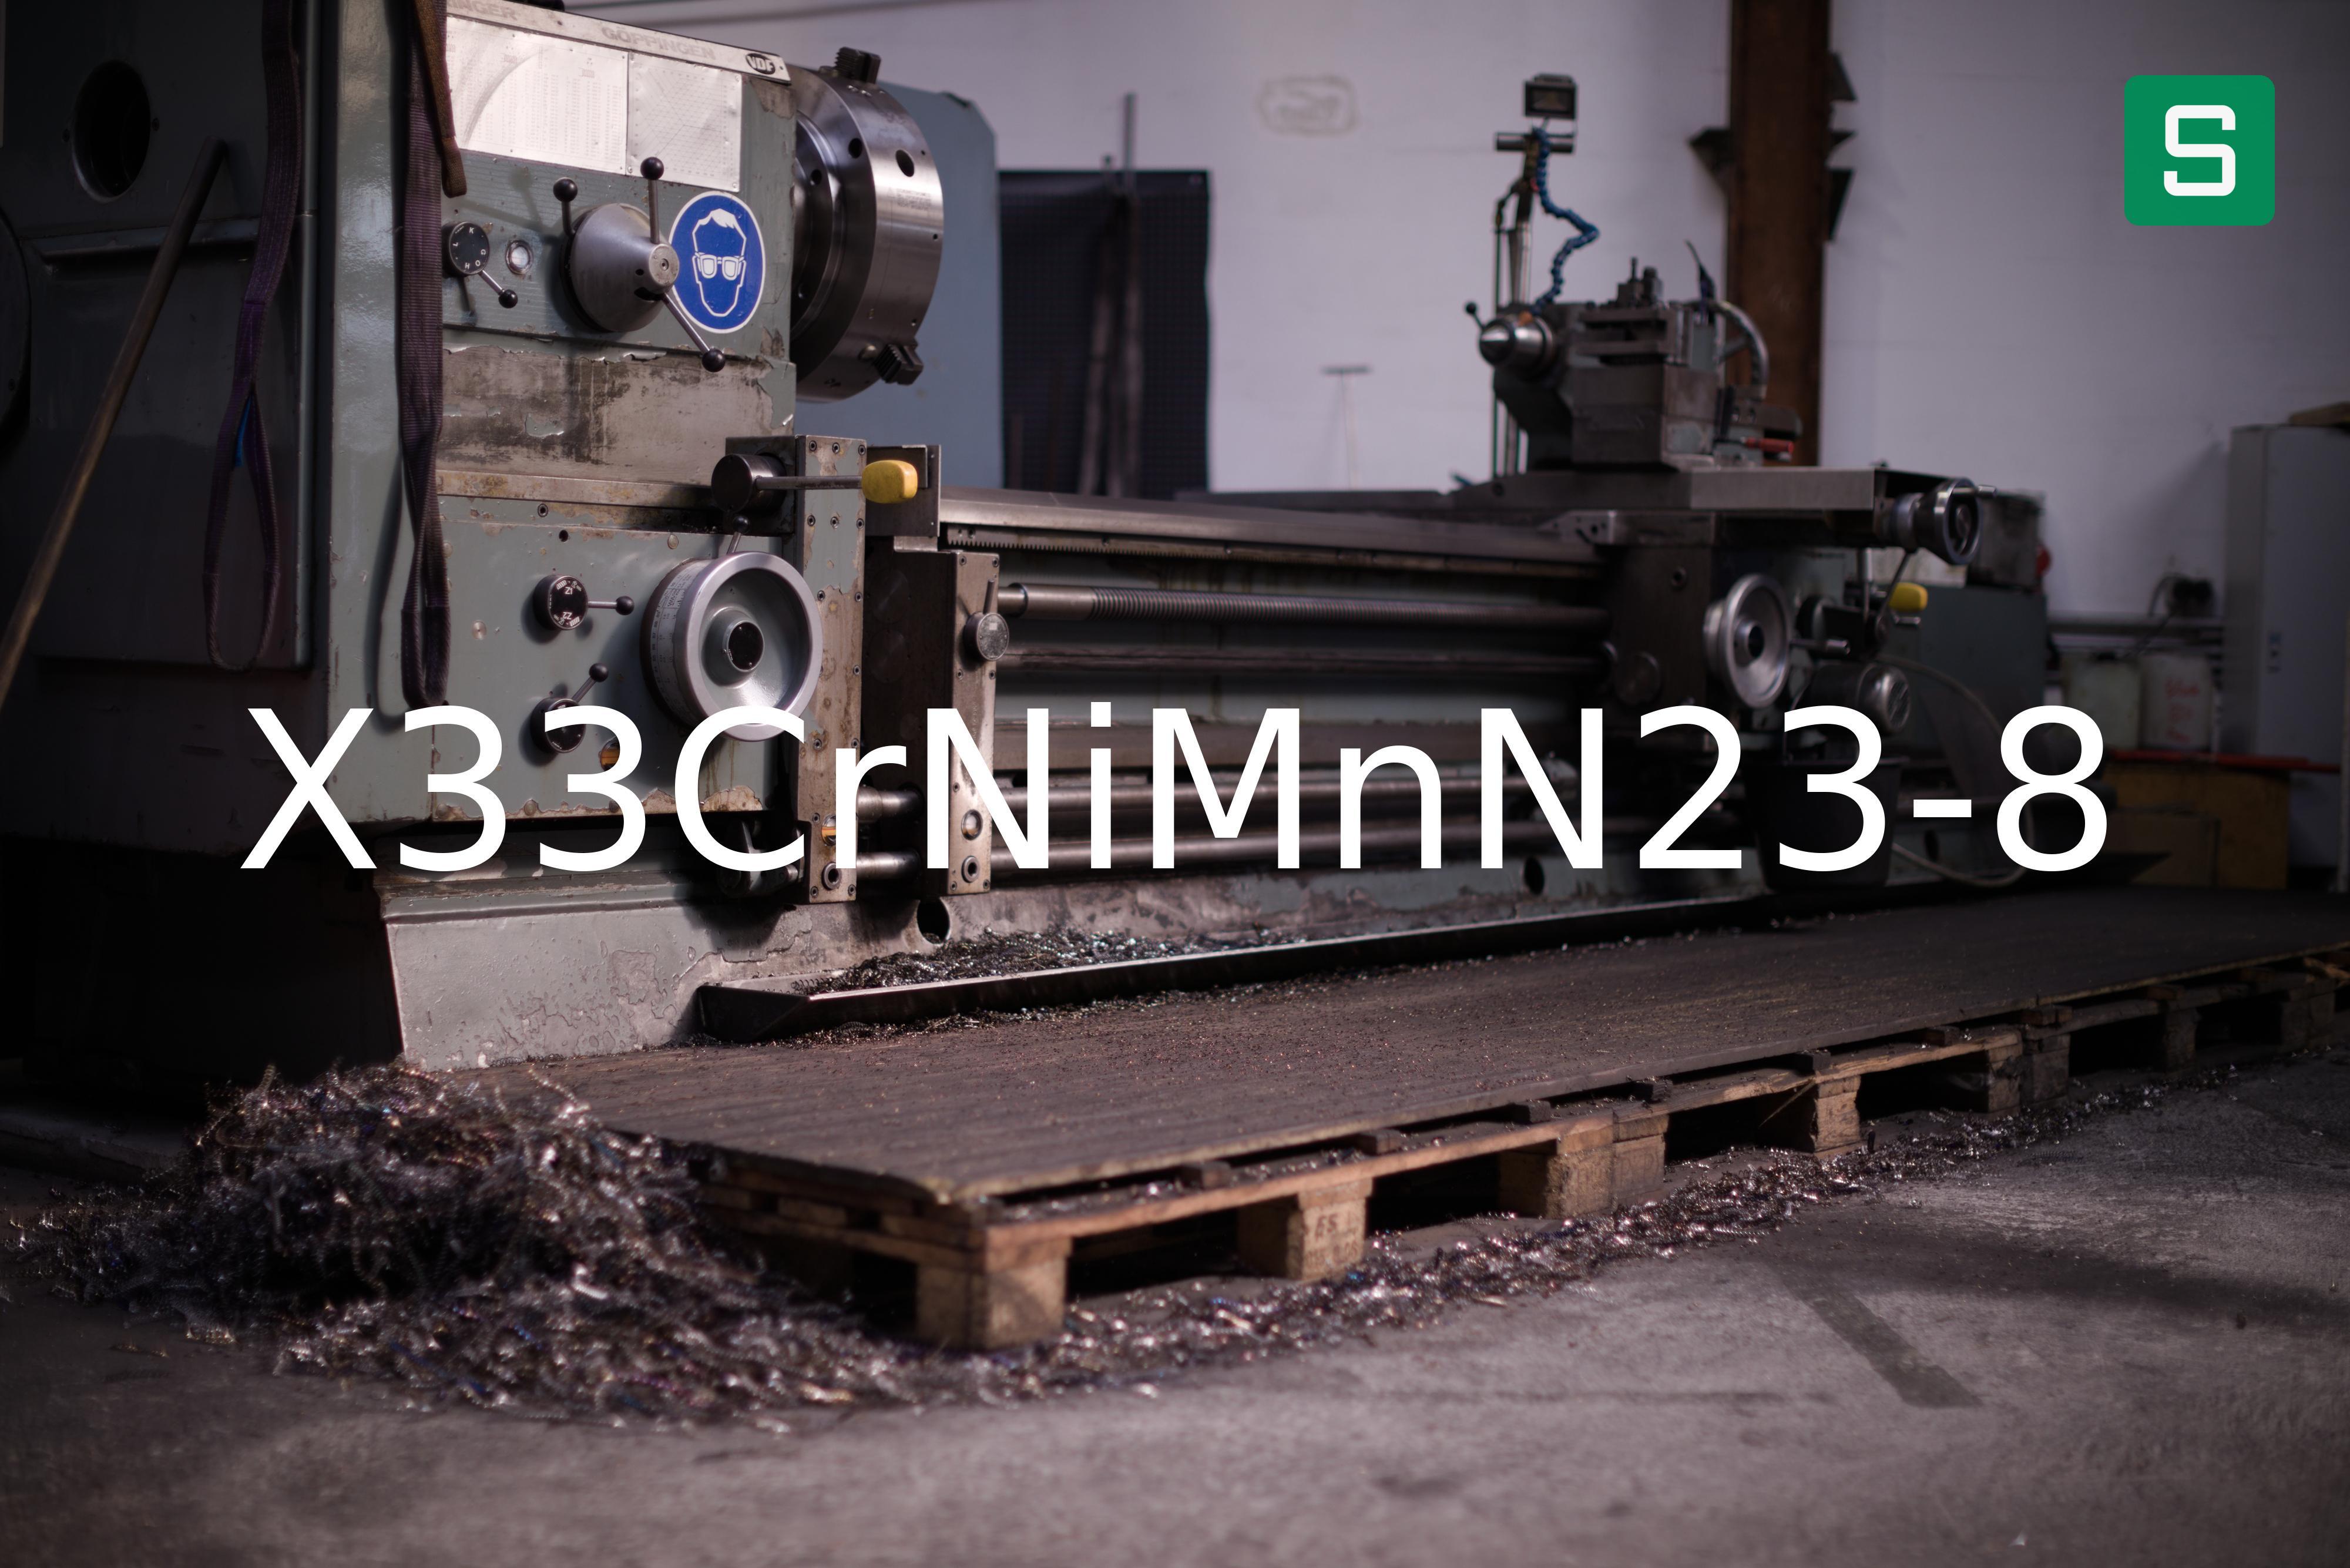 Steel Material: X33CrNiMnN23-8